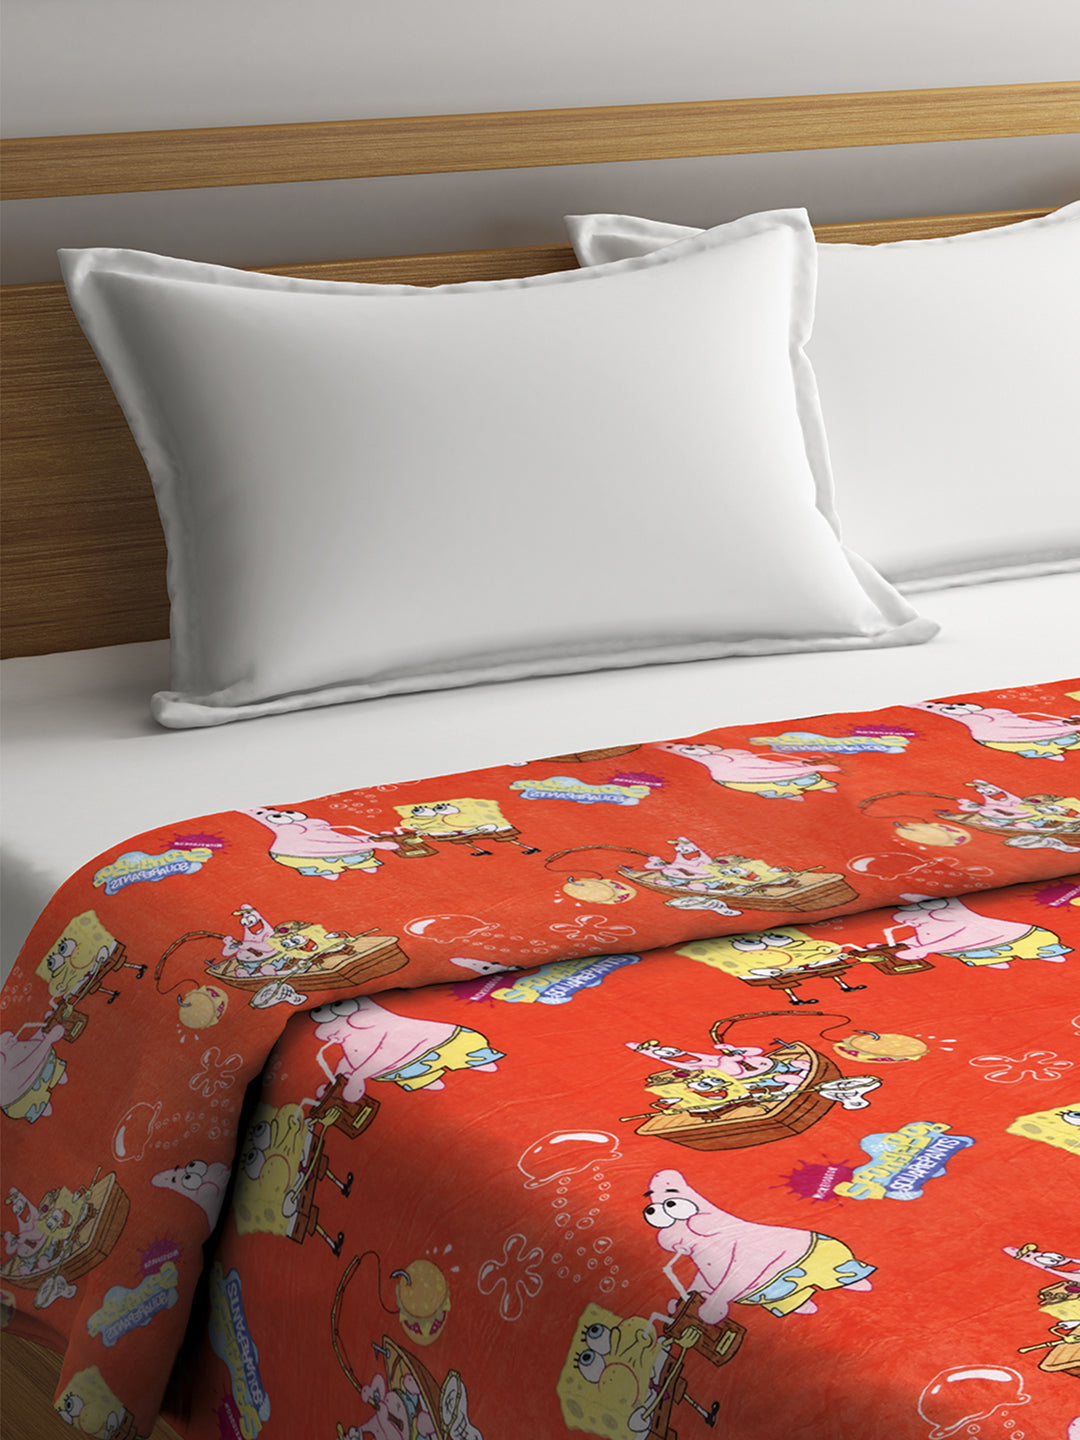 KLOTTHE Orange Fur Cartoon Characters 300 GSM Double Bed Comforter (220X210 cm)